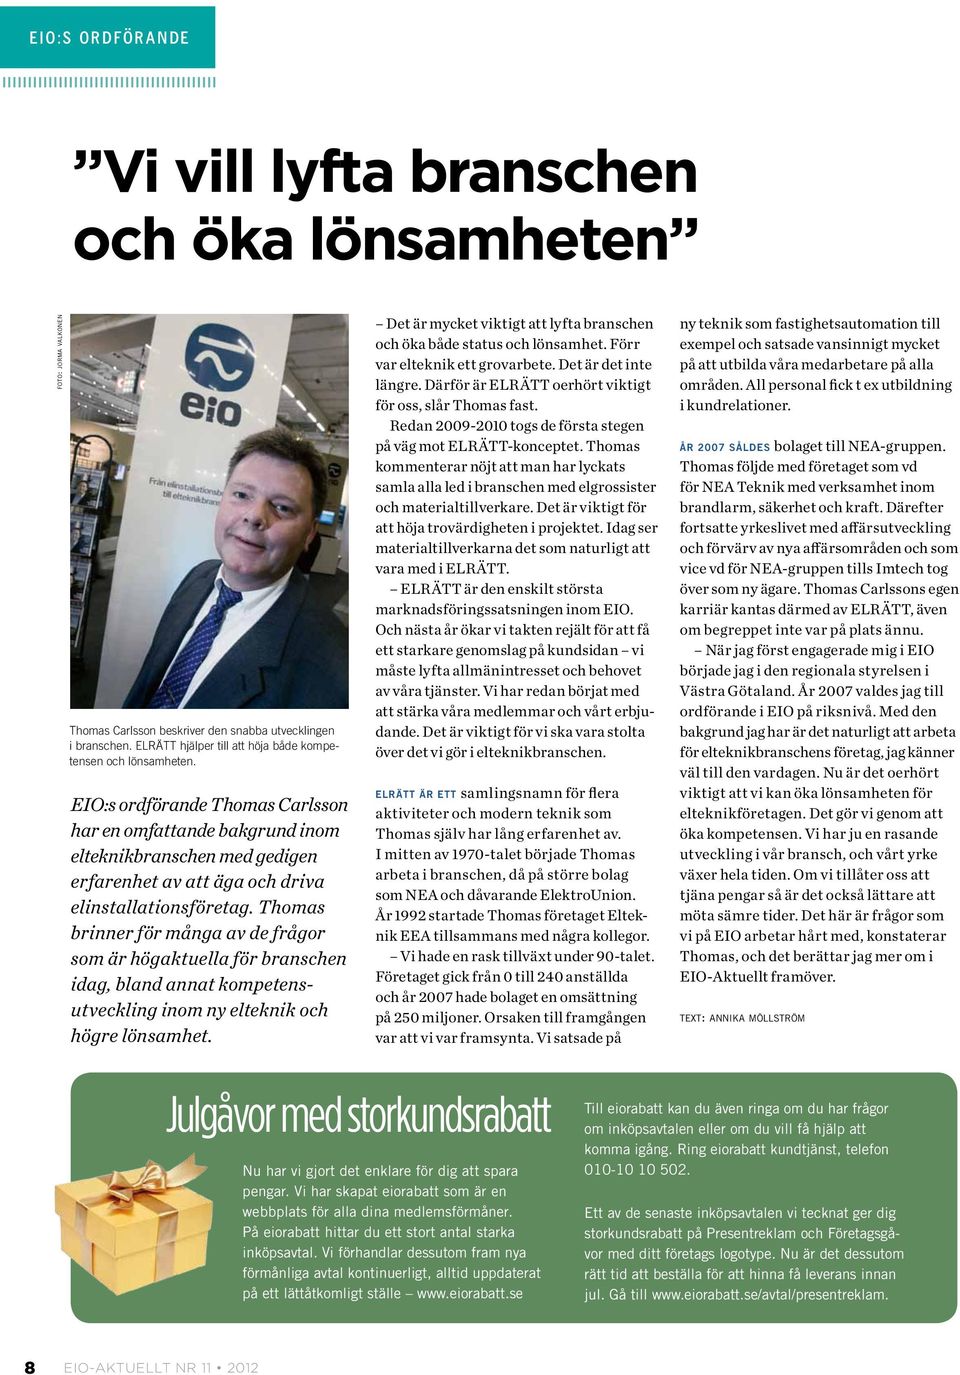 EIO:s ordförande Thomas Carlsson har en omfattande bakgrund inom elteknikbranschen med gedigen erfarenhet av att äga och driva elinstallationsföretag.